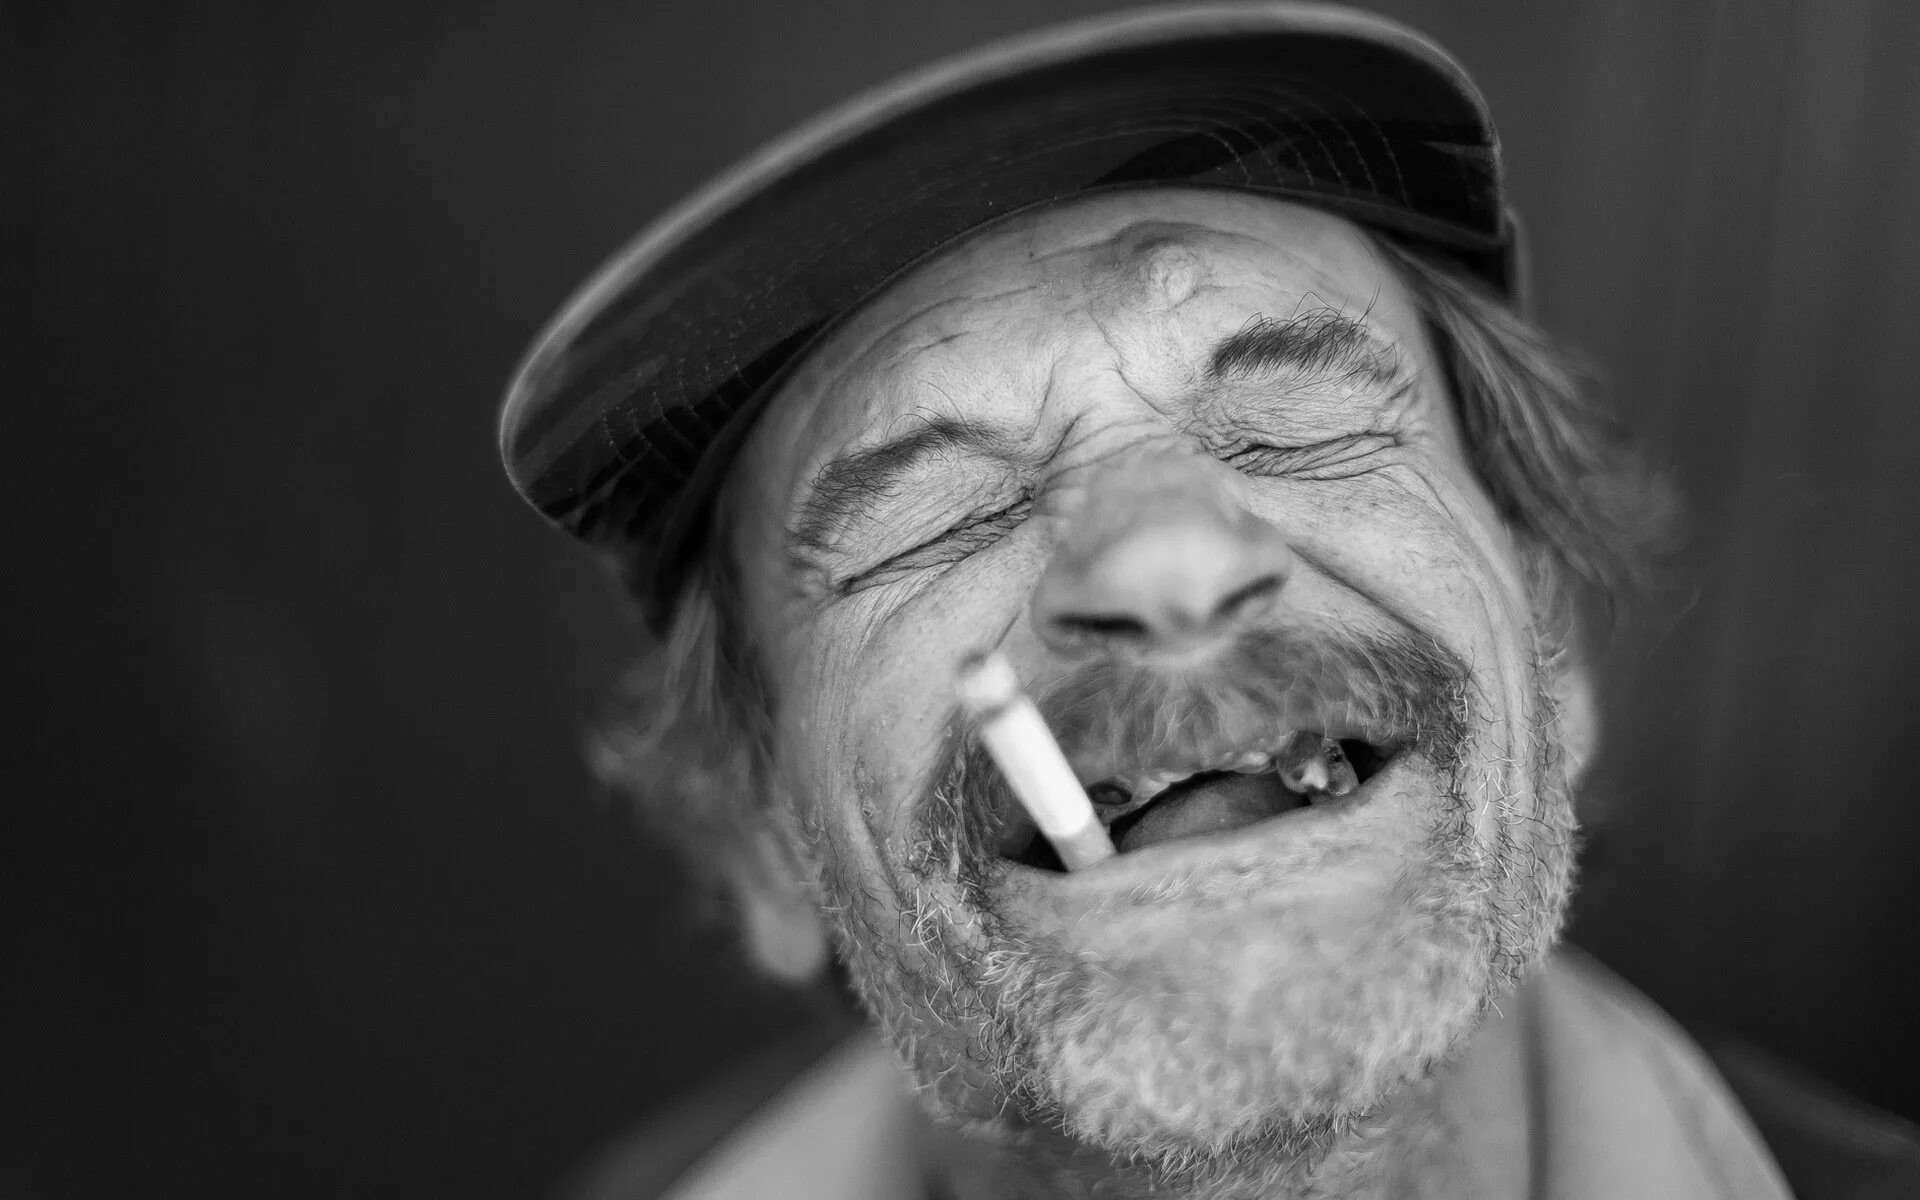 Дед с сигаретой. Прикольные фото на аватарку для мужчин. Беззубая улыбка старика. Мужик в кепке с папиросой. Смешной дел